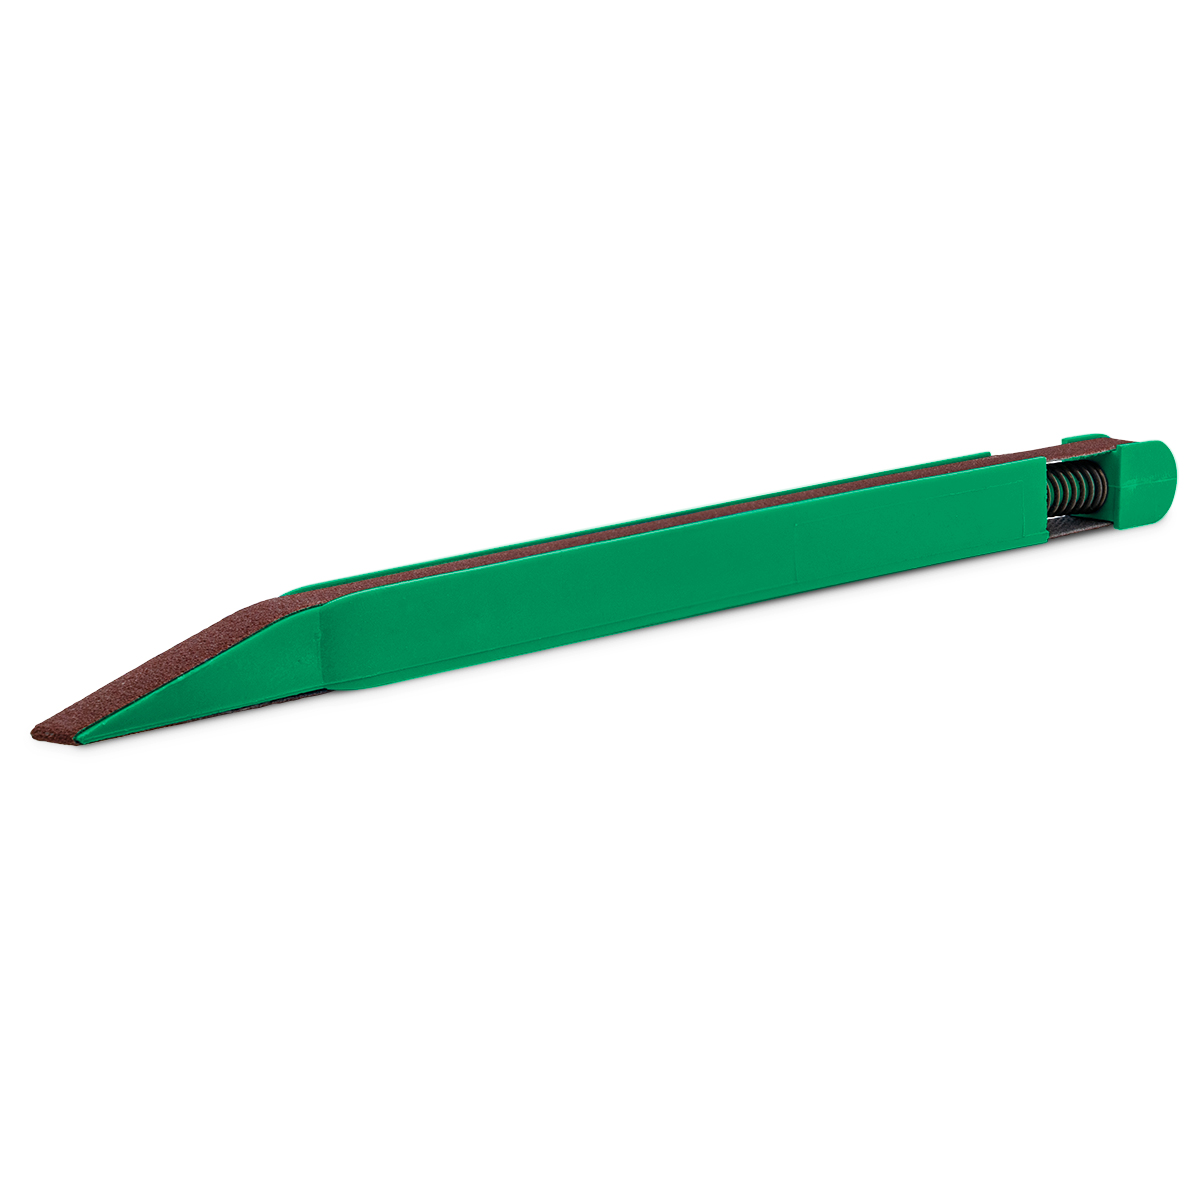 Schleifstift, Korn 320, grün, für Schleifbänder mit 7 x 330 mm